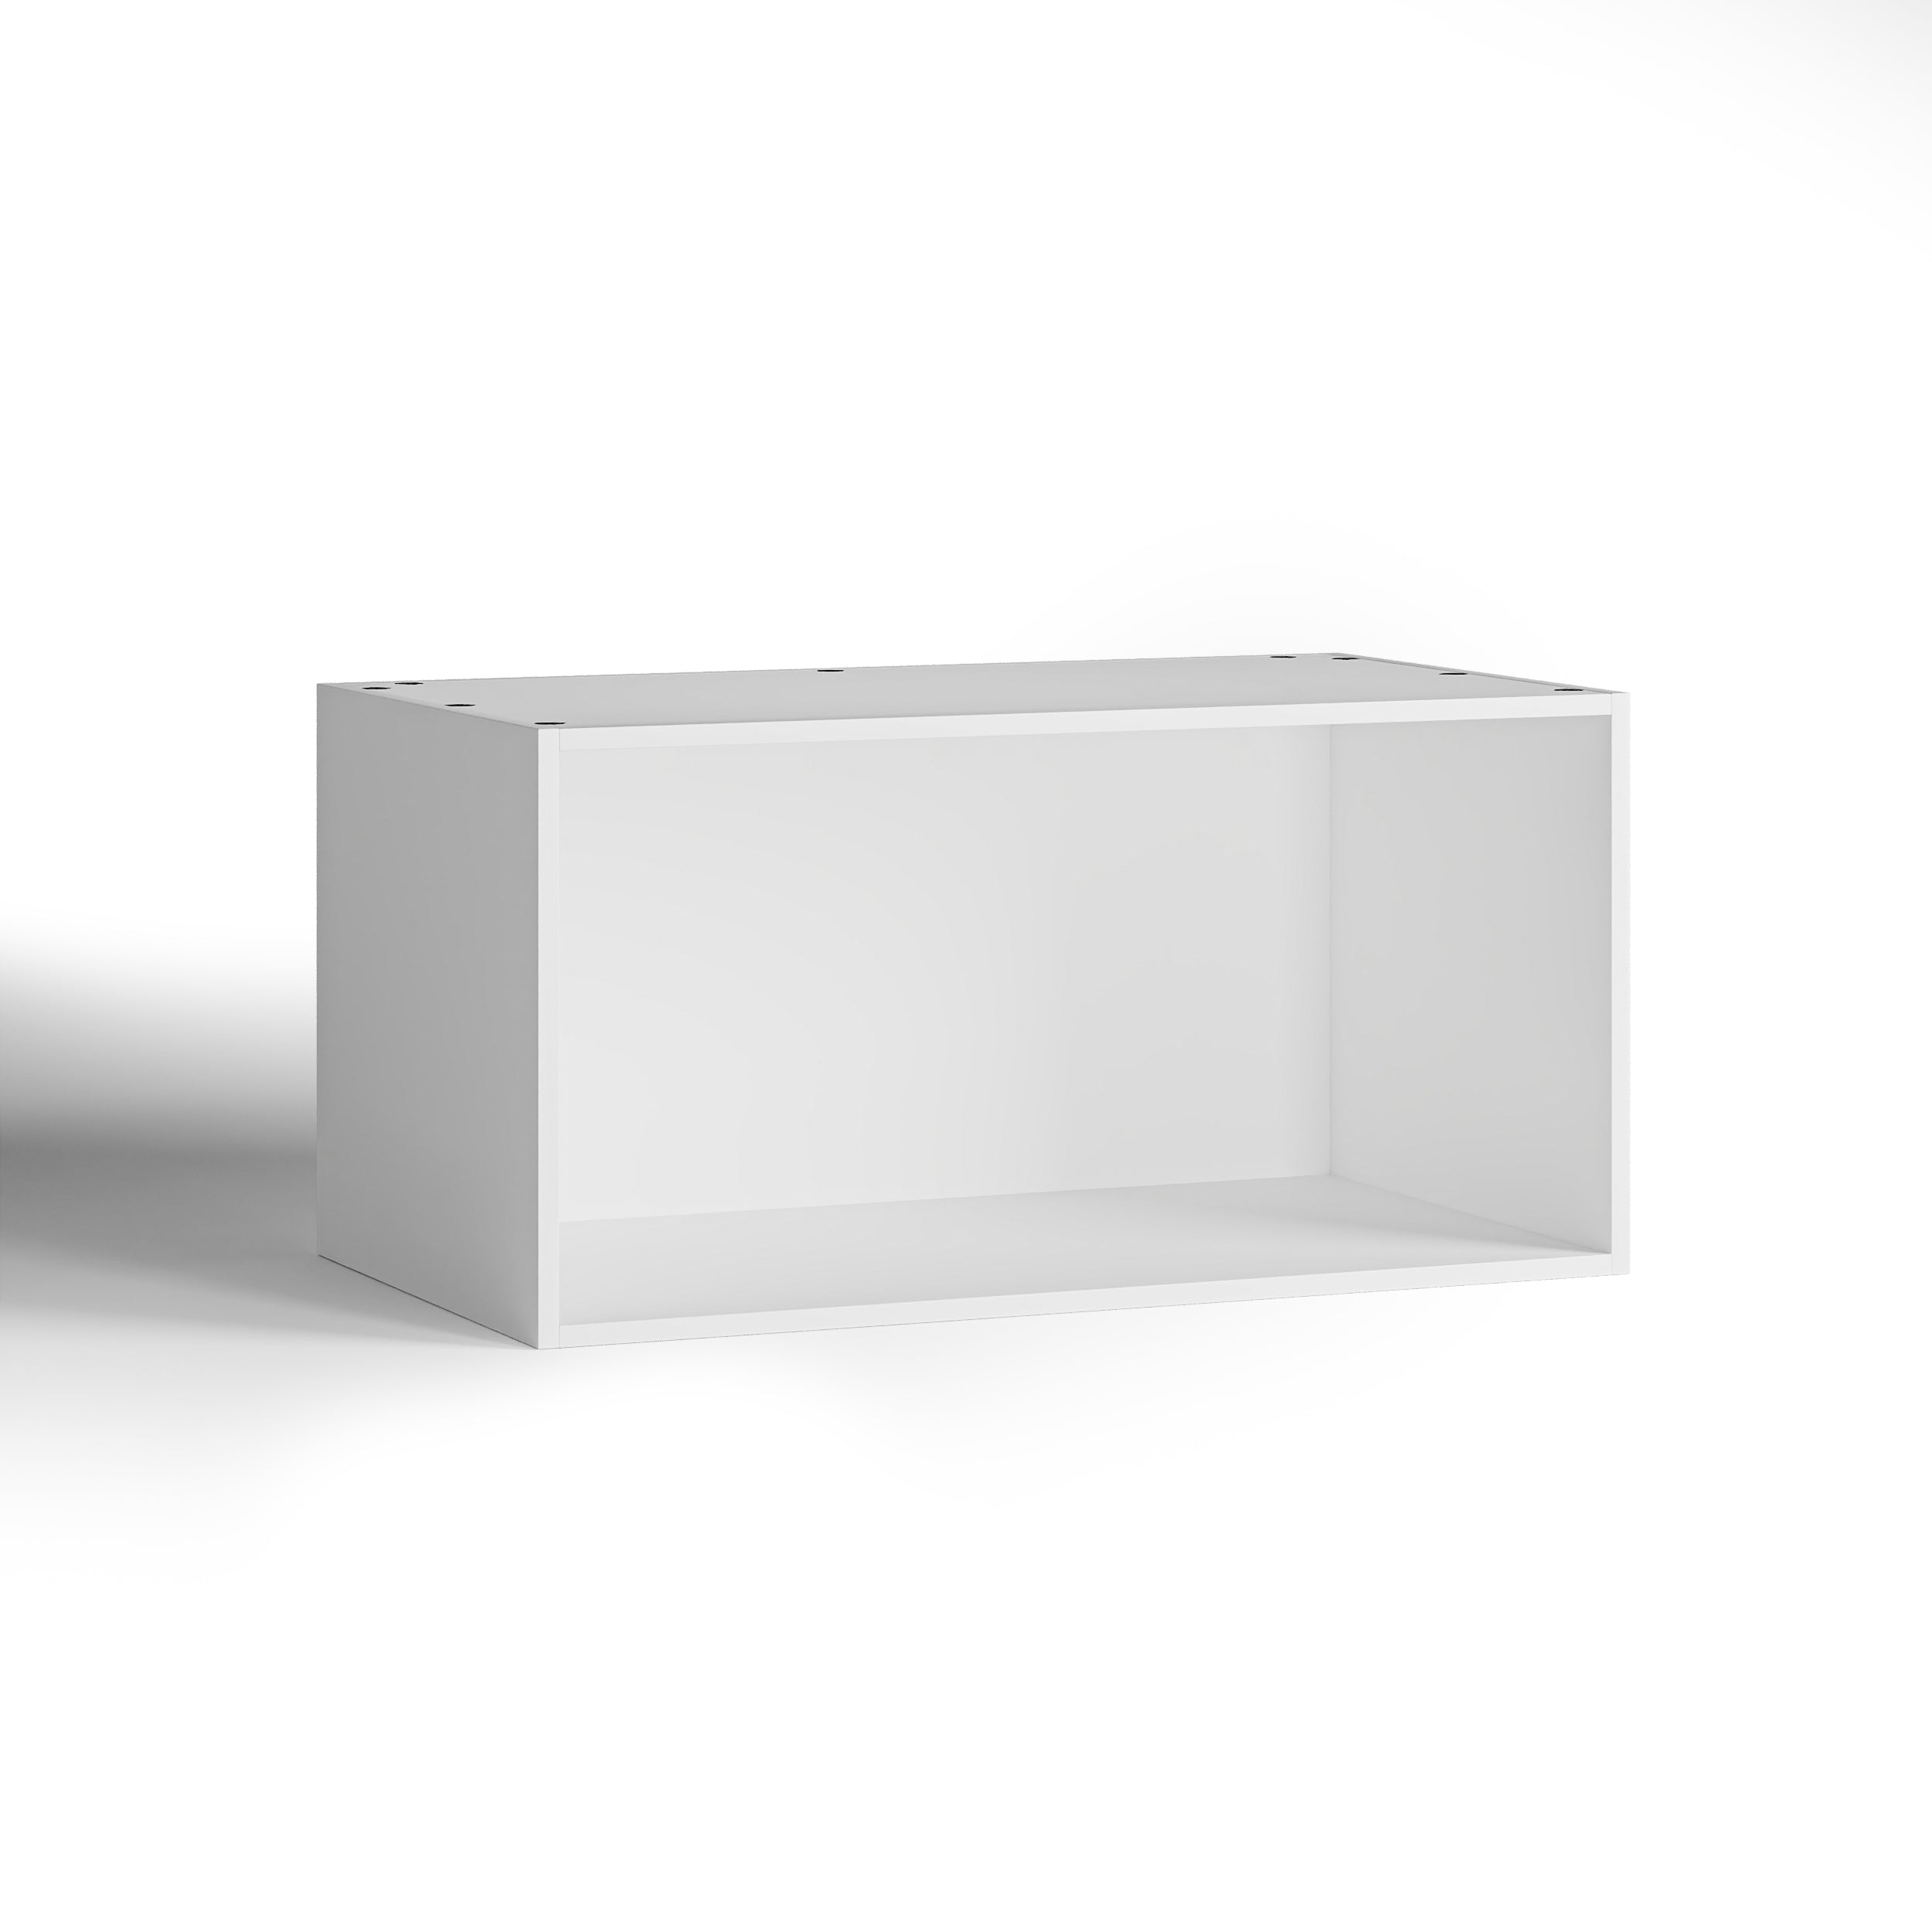 100x50 - Cabinet (58cm D) No Doors - PAX